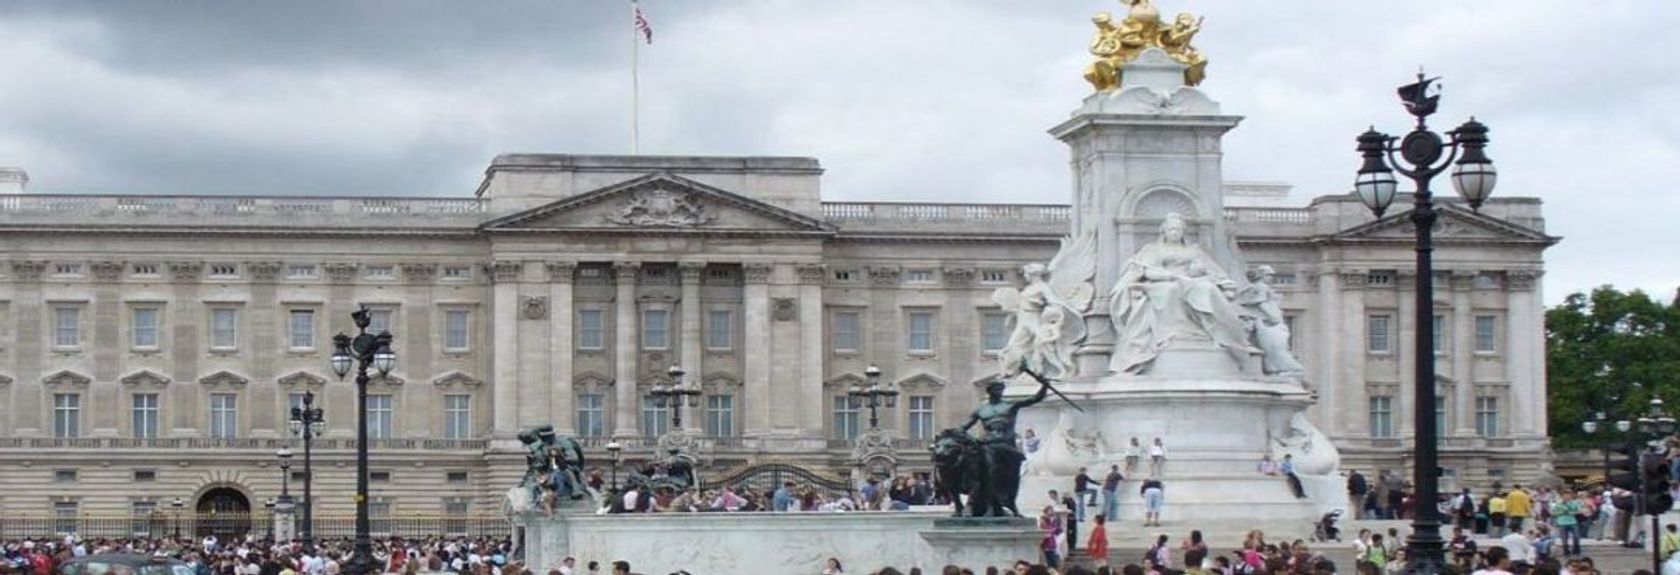 Um dos pontos turísticos mais famosos de Londres é sem dúvida Buckingham Palace, a residência oficial da Rainha da Inglaterra. Todos os anos milhões de turistas ficam às portas deste impressionante palácio, na esperança de vislumbrar a Rainha e a mudança da guarda